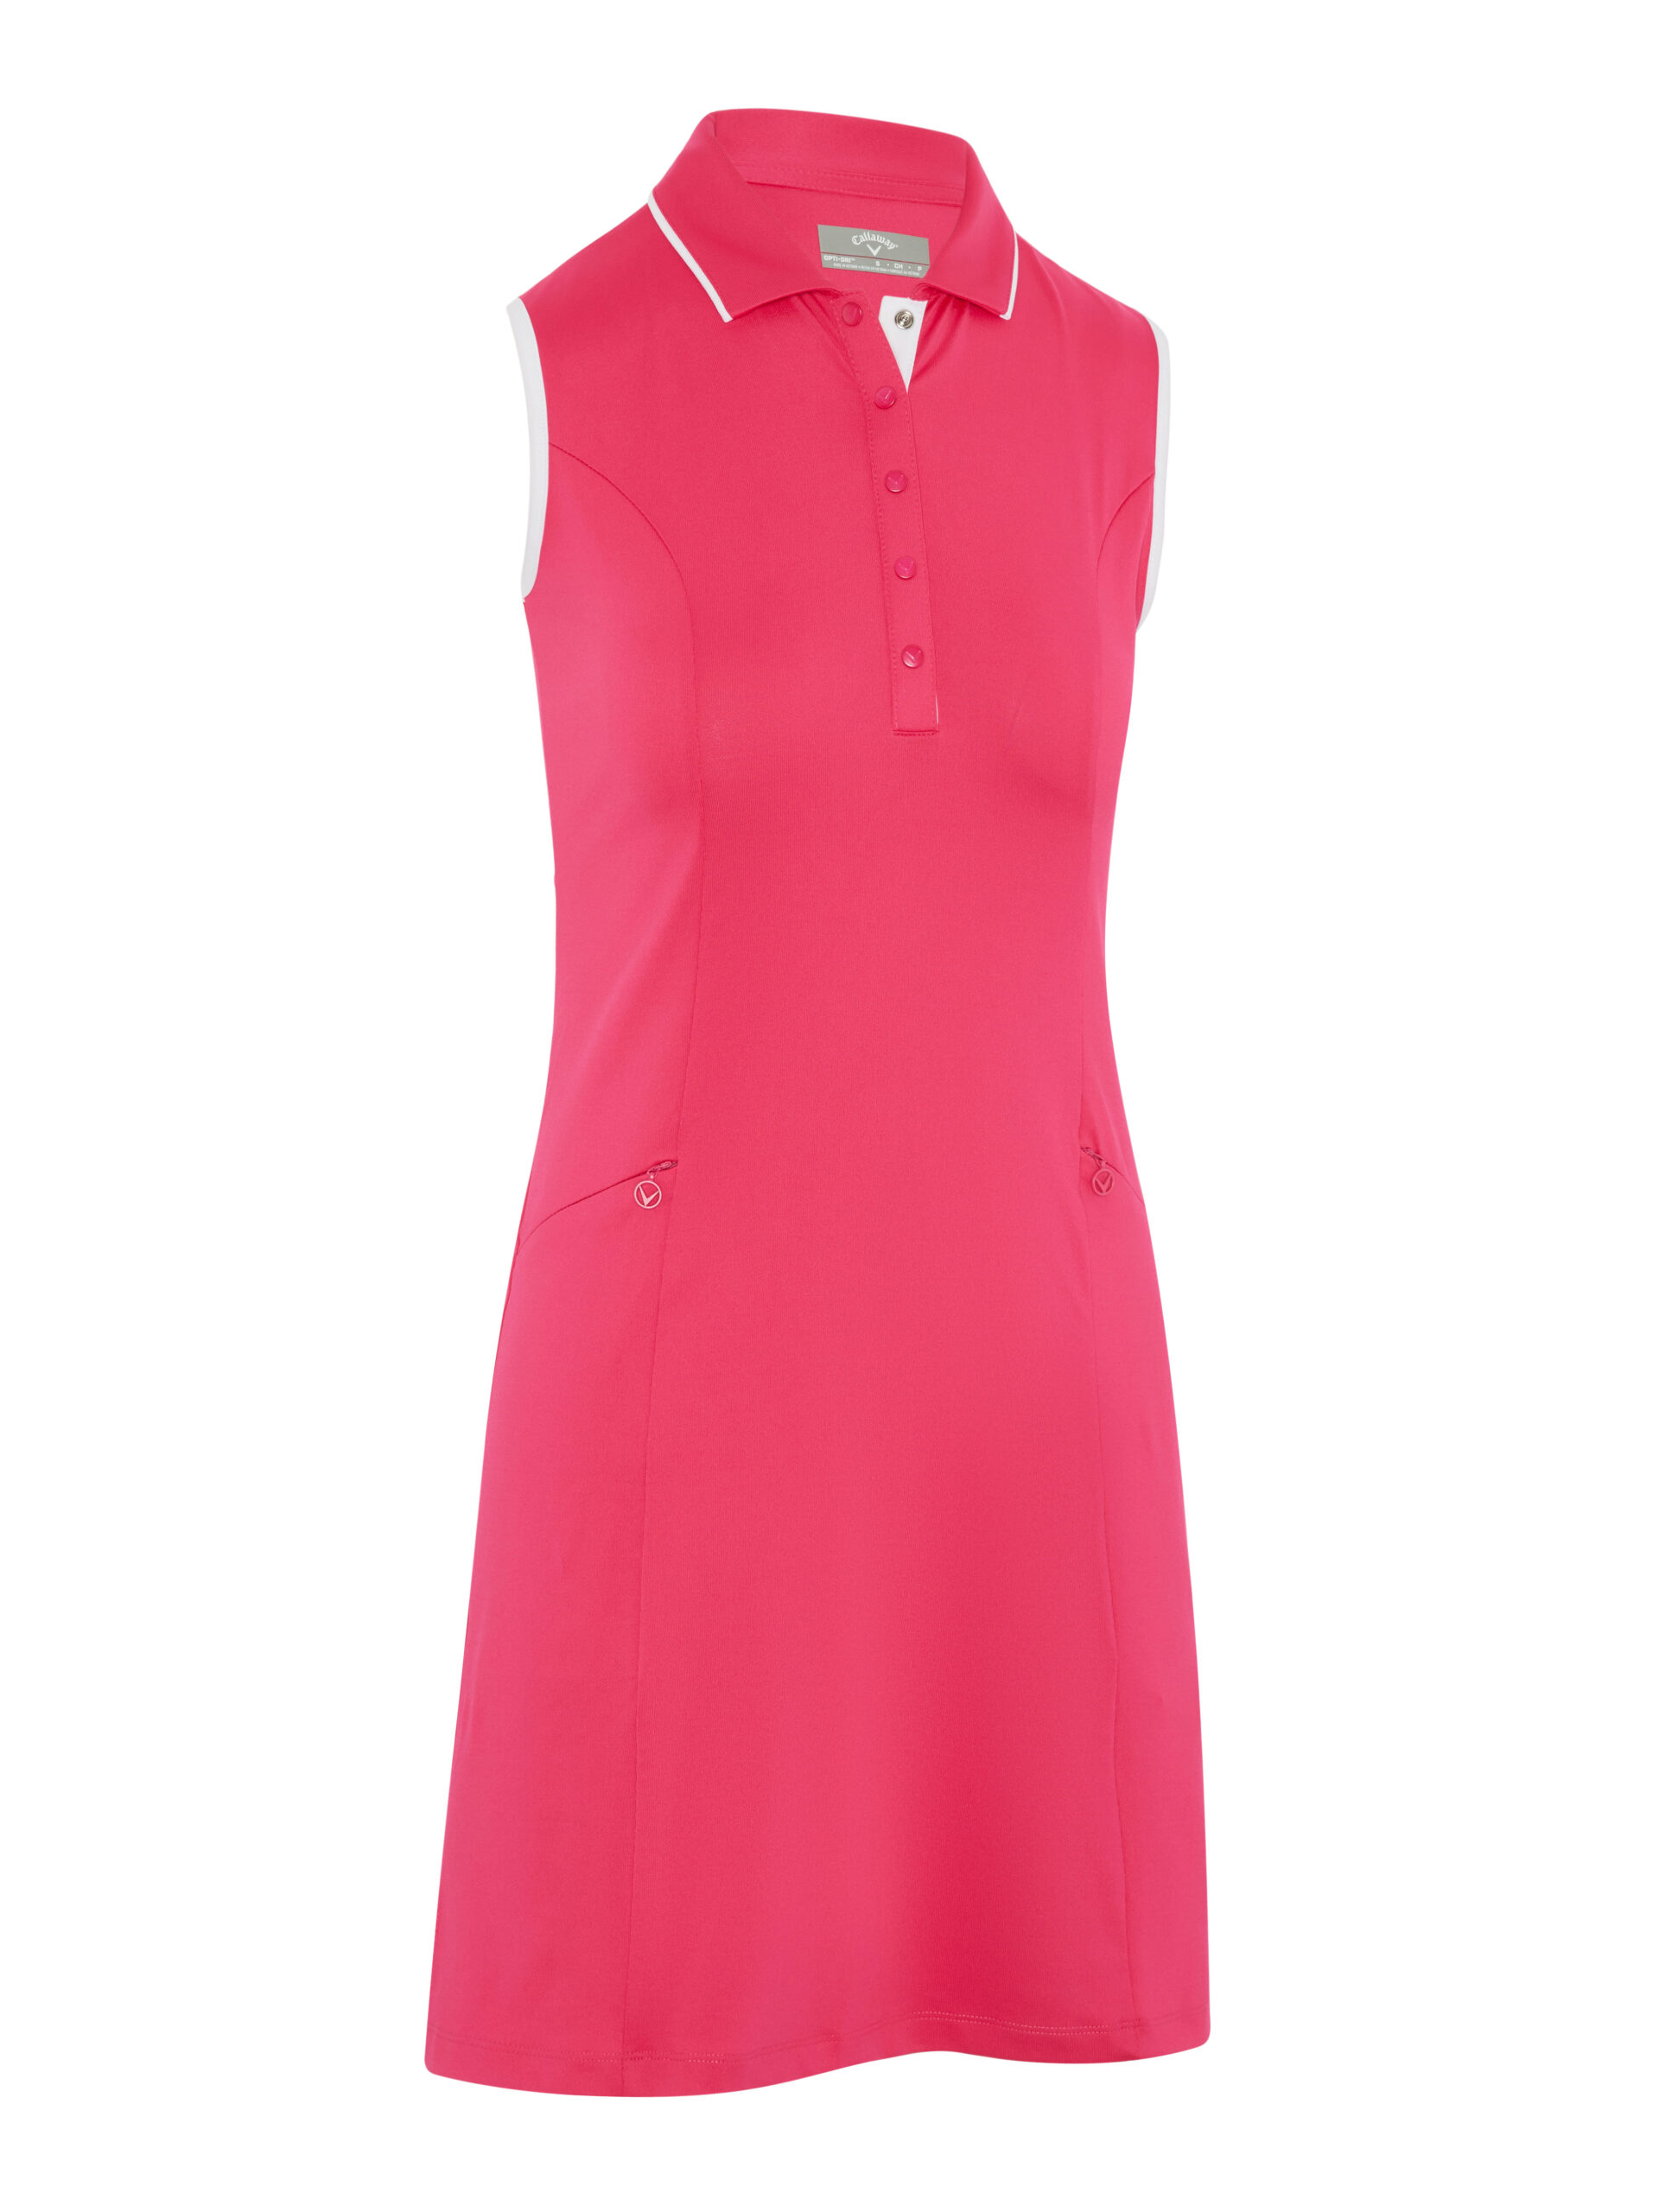 Callaway dámské golfové šaty, růžové